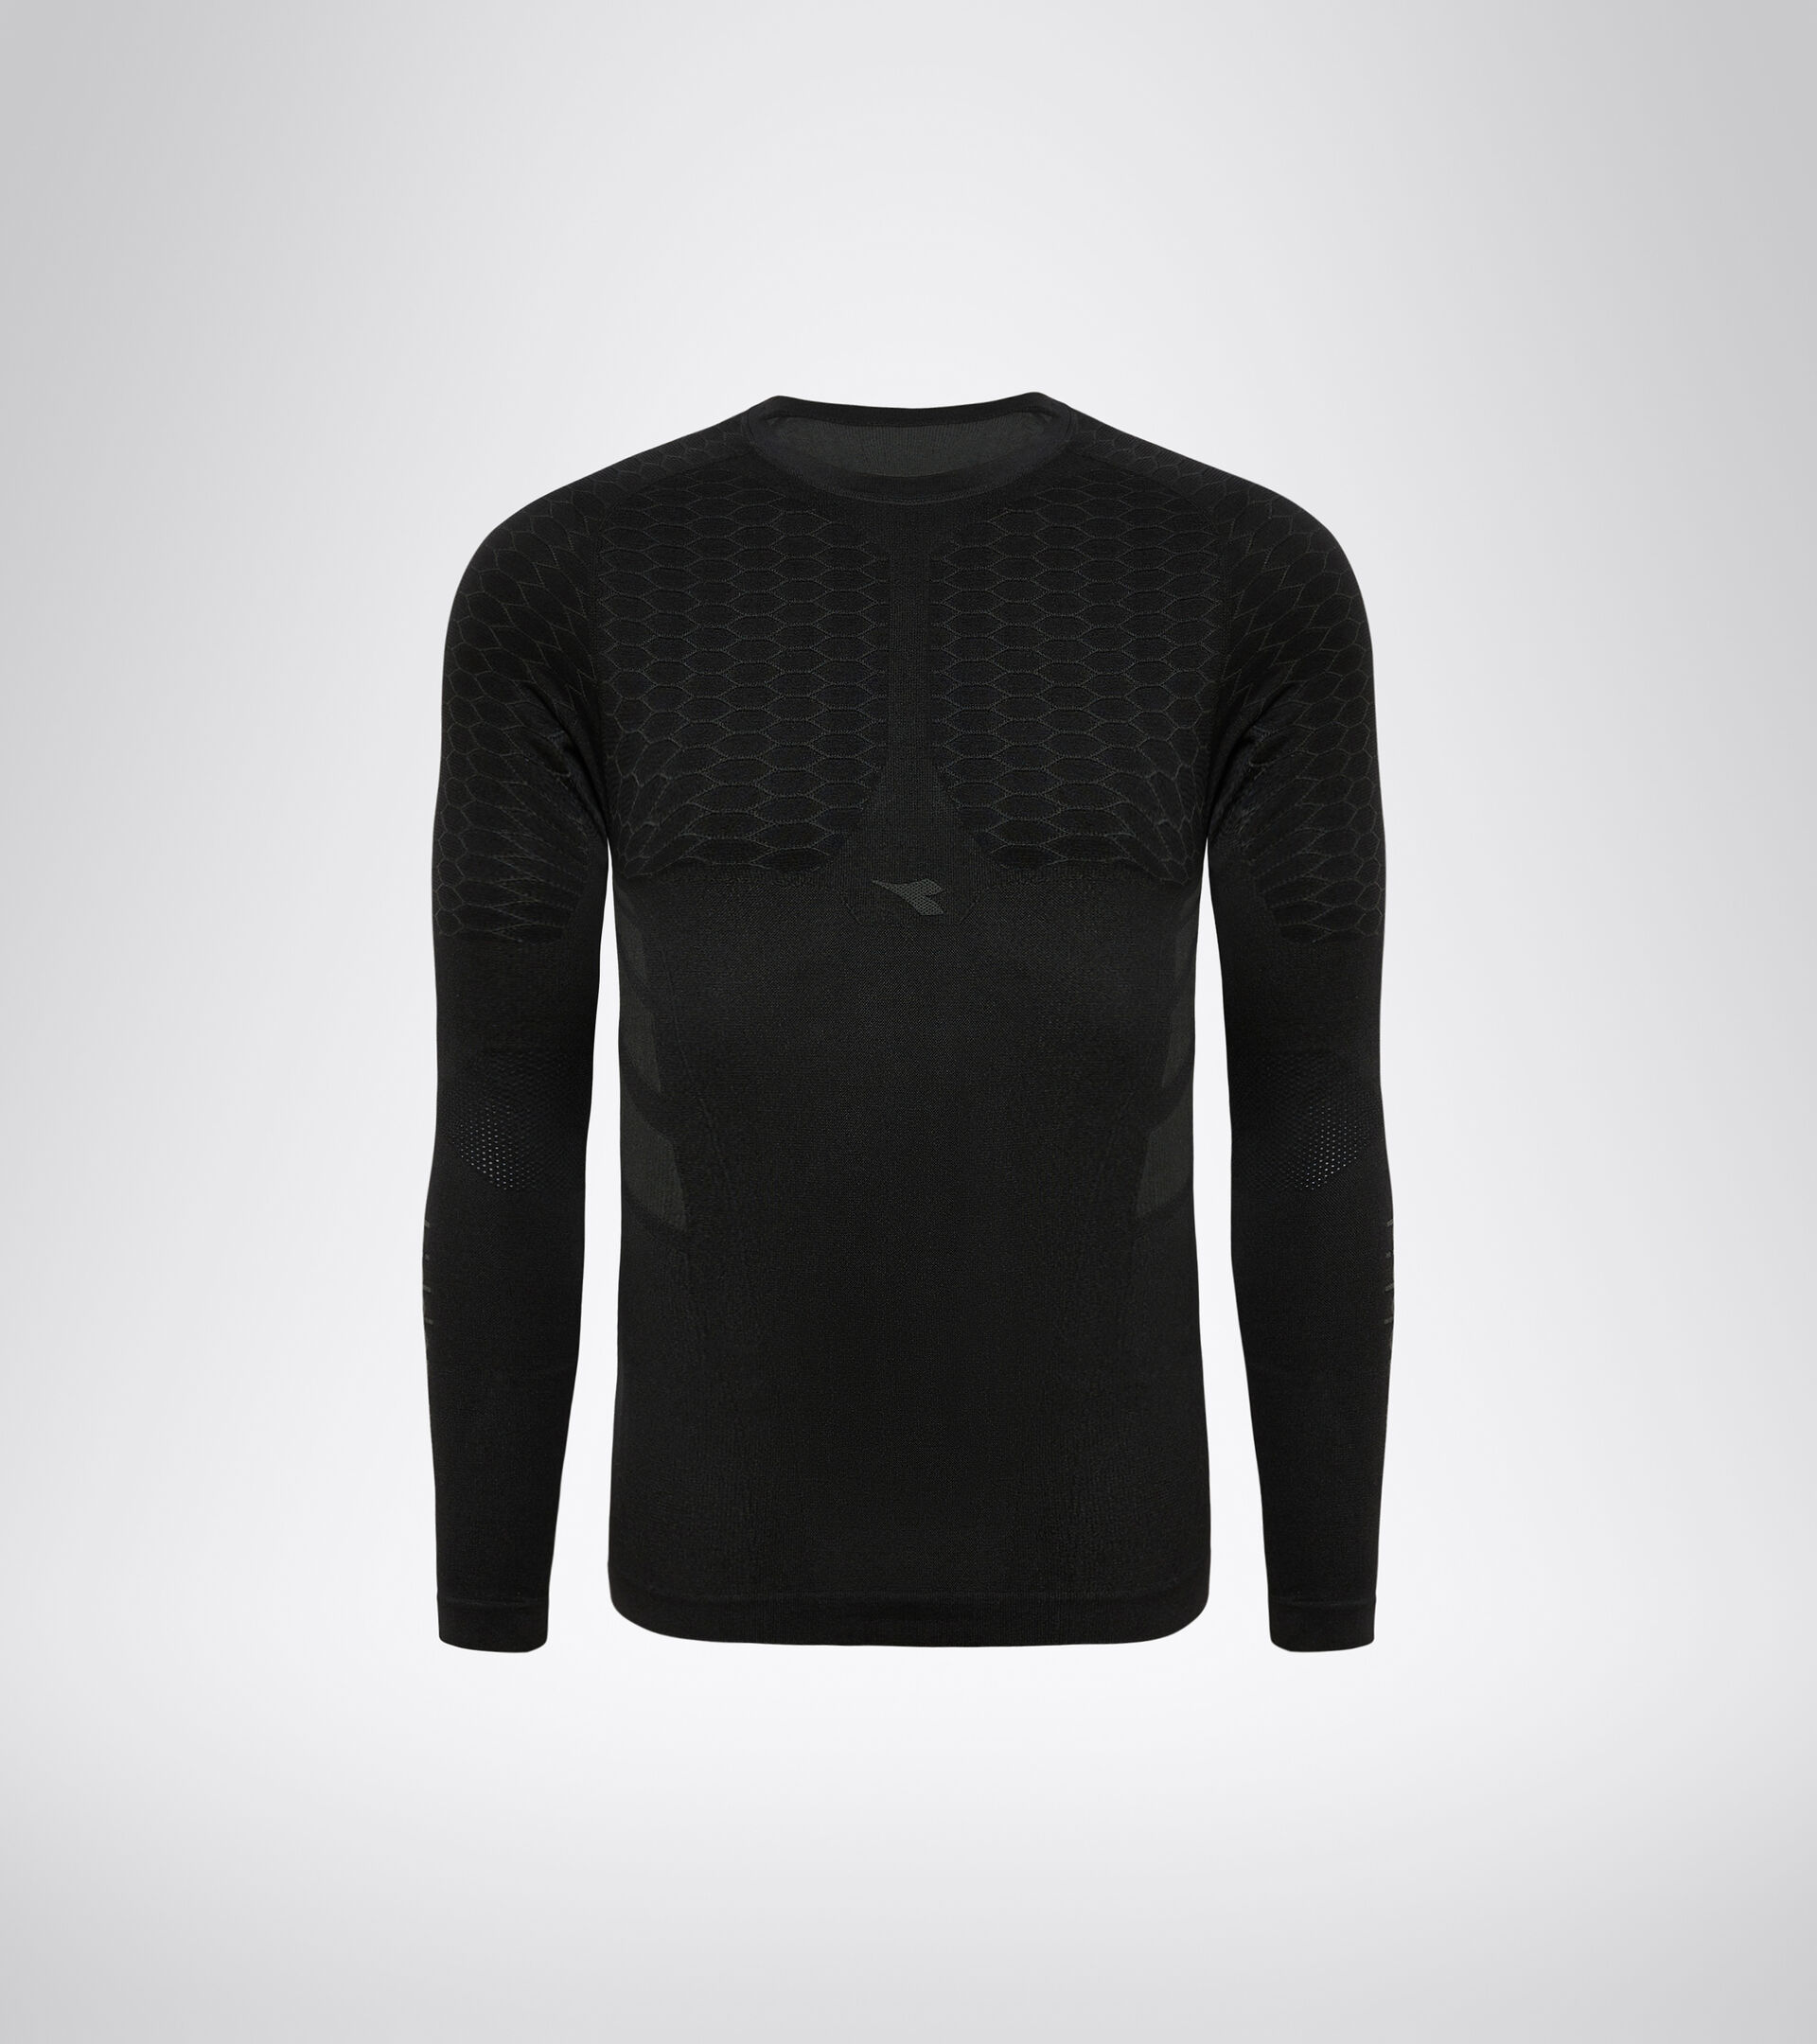 LS T-SHIRT ACT Long-sleeved - training Store Diadora Men - Online t-shirt